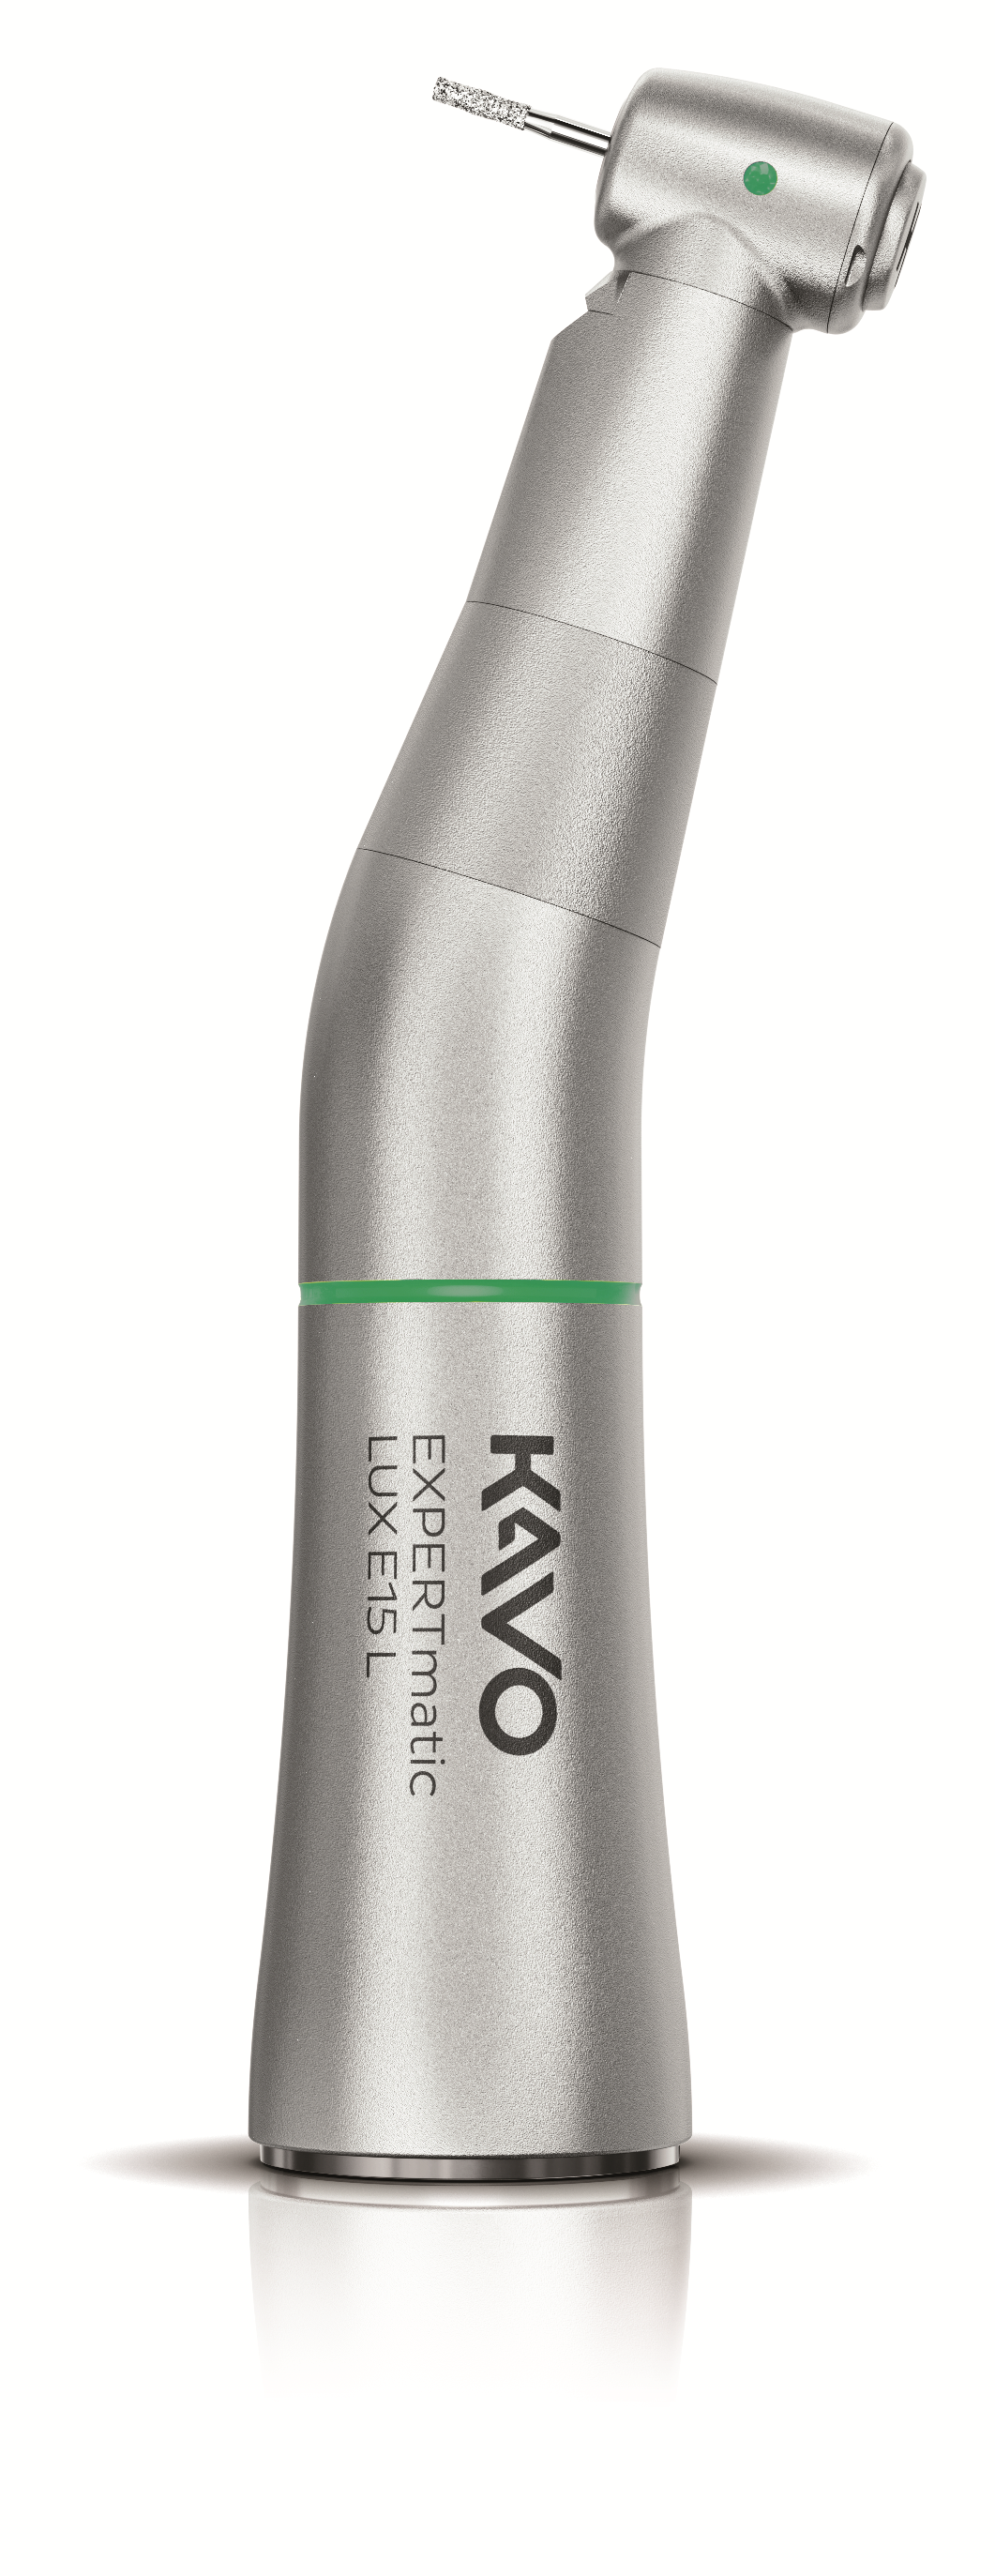 KaVo EXPERTmatic E15L, Winkelstück mit Licht, grün 5,4:1 Druckknopfspannung für Wkst.-Bohrer, Innensprayführung, Schmutzabweiser